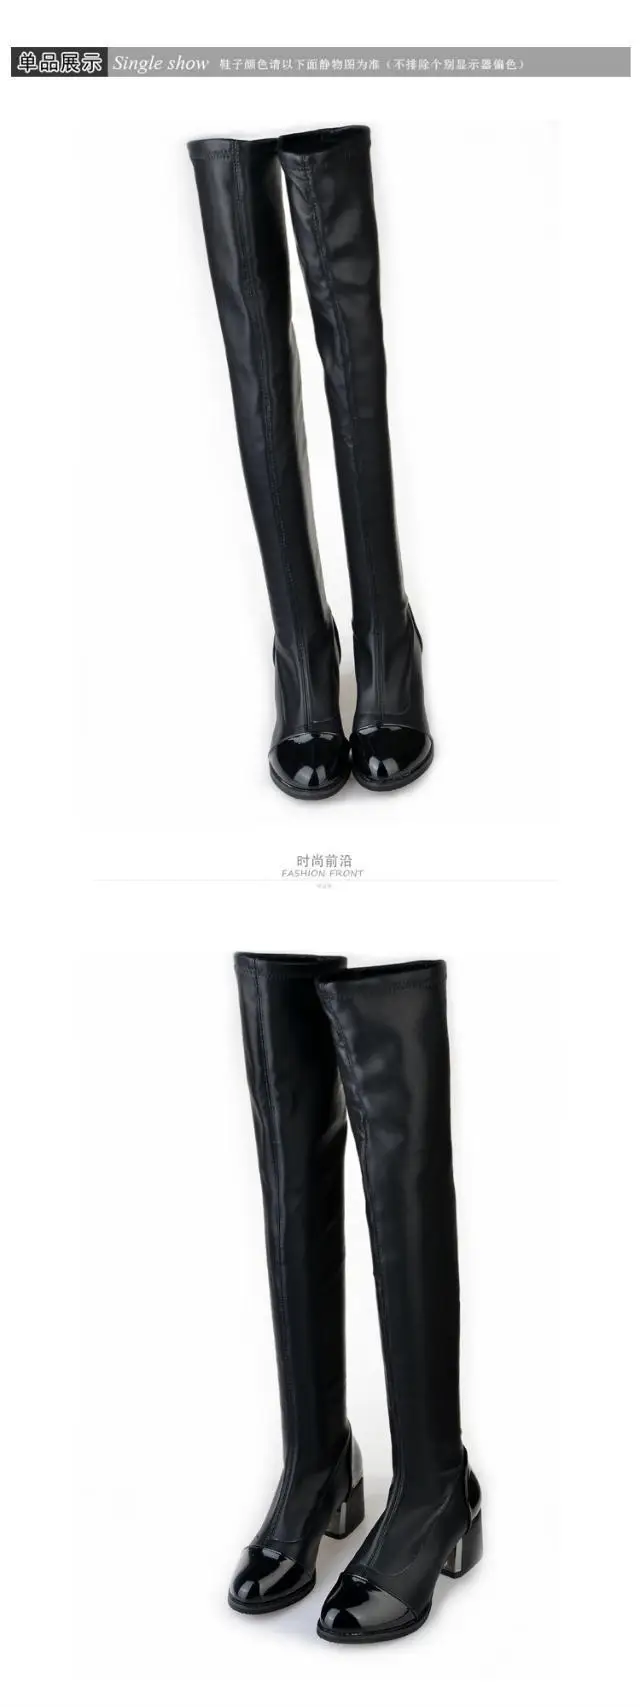 GOXPACER/обувь выше колена; женские пикантные облегающие ботинки в байкерском стиле из лакированной кожи; женская обувь на высоком каблуке; модные длинные зимние удобные сапоги-трубы